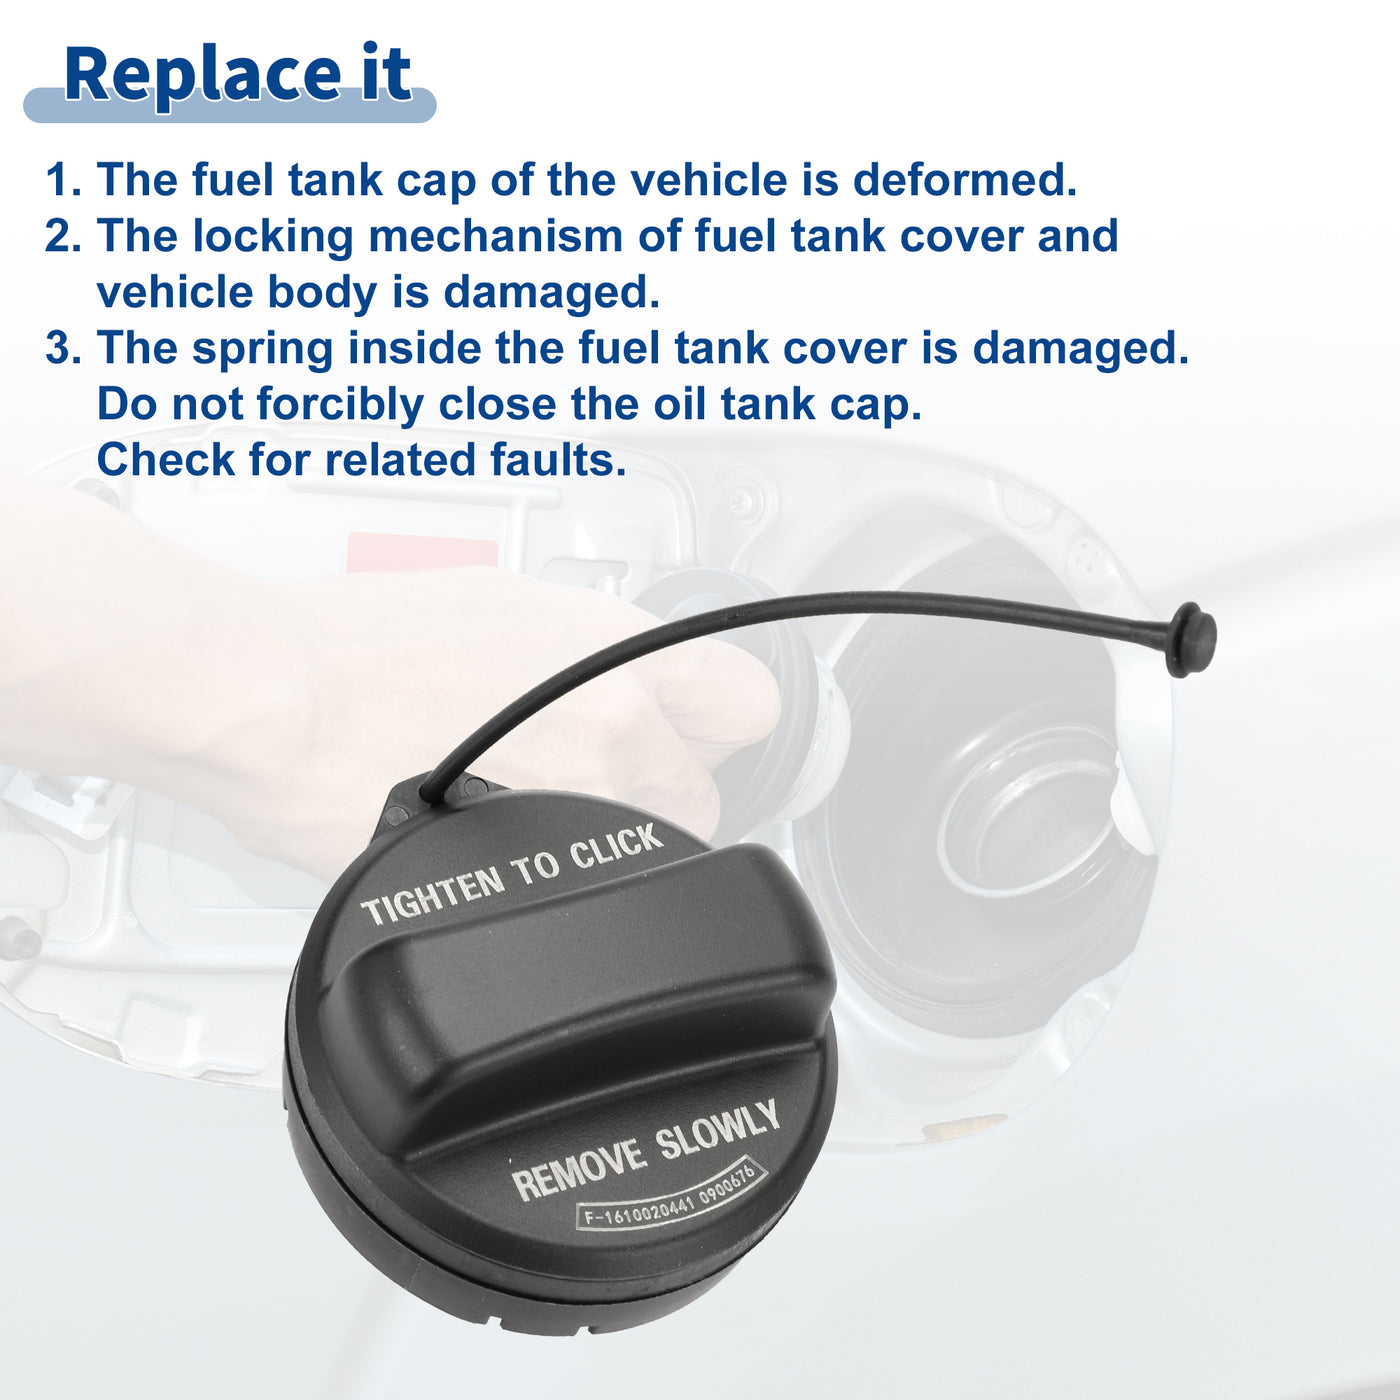 ACROPIX Plastic Gas Fuel Cap Fuel Tank Cap Black Fit for Honda Accord 2008-2017 No.17670SJA013 - Pack of 1